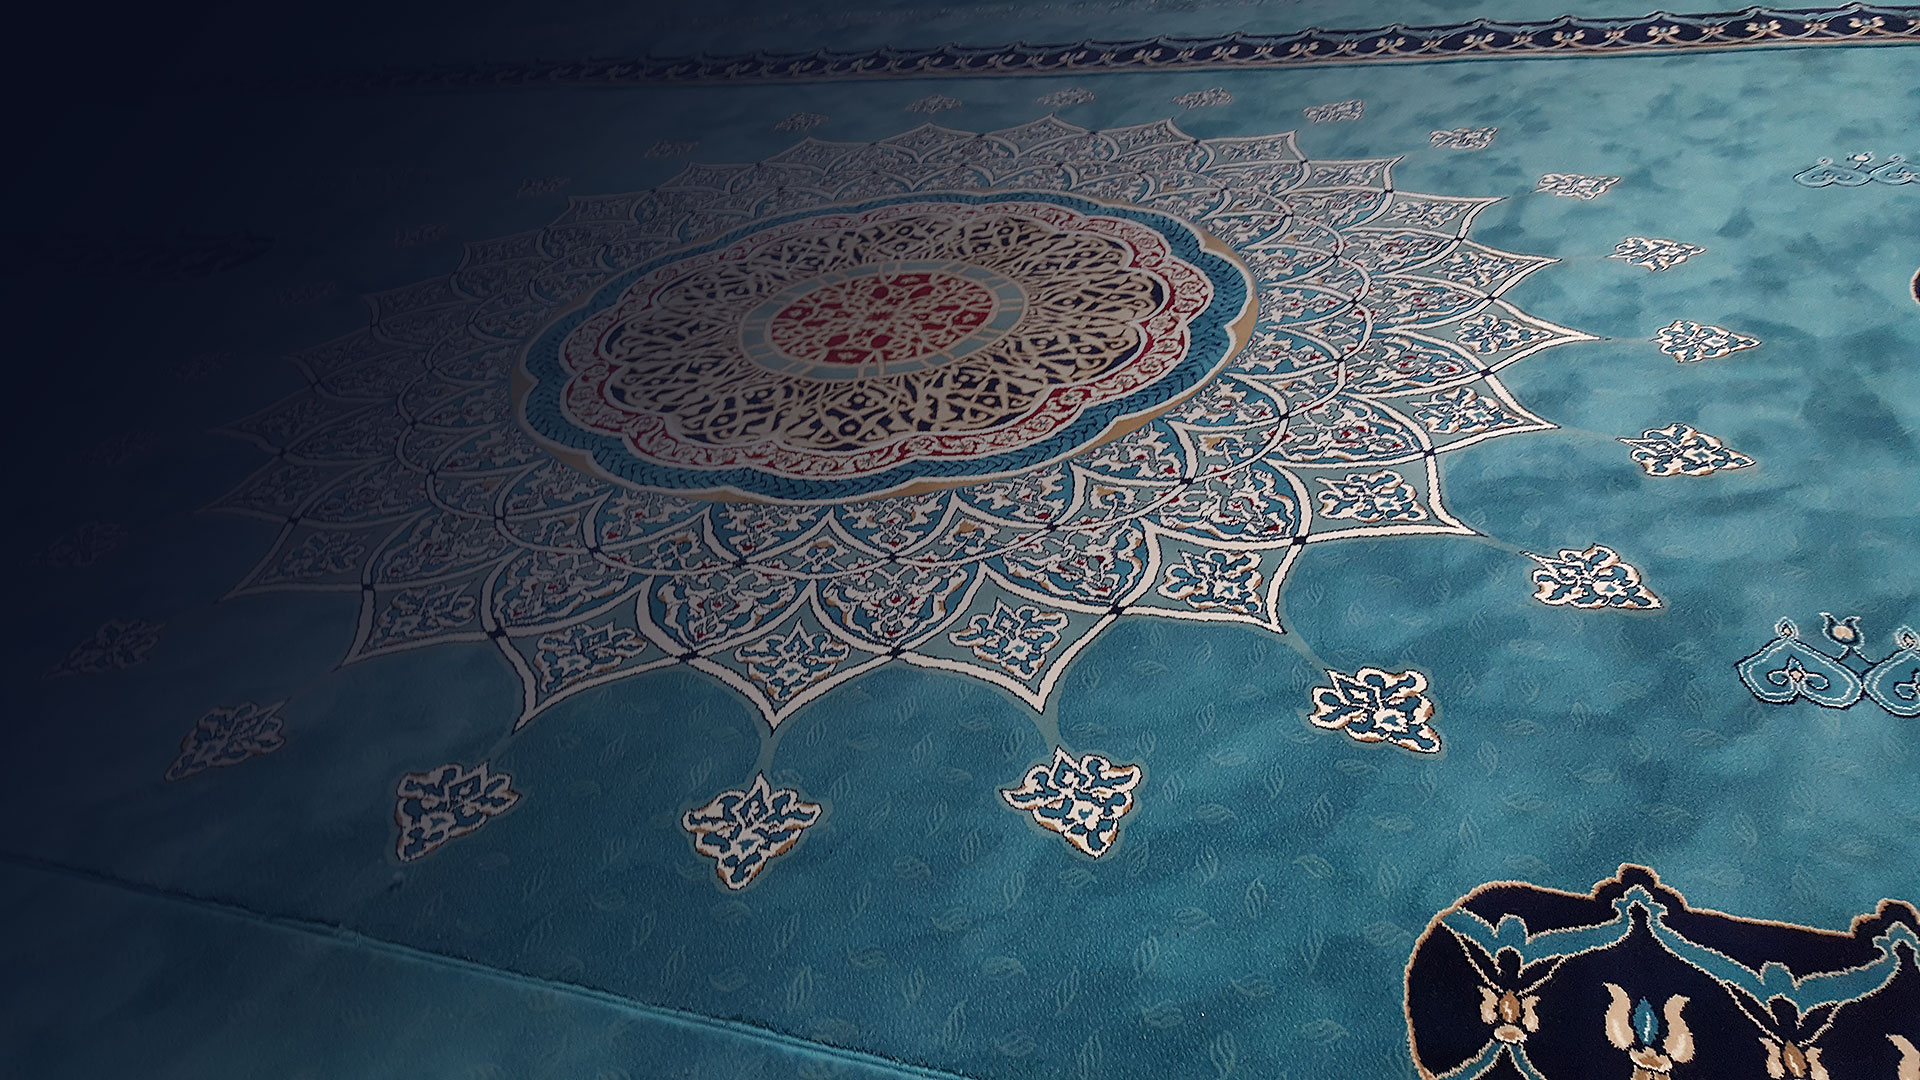 Albiser Cami halısı üretici olarak sizlerin ibadetlerinin daha sağlıklı bir ortamda olması için çalışıyoruz.